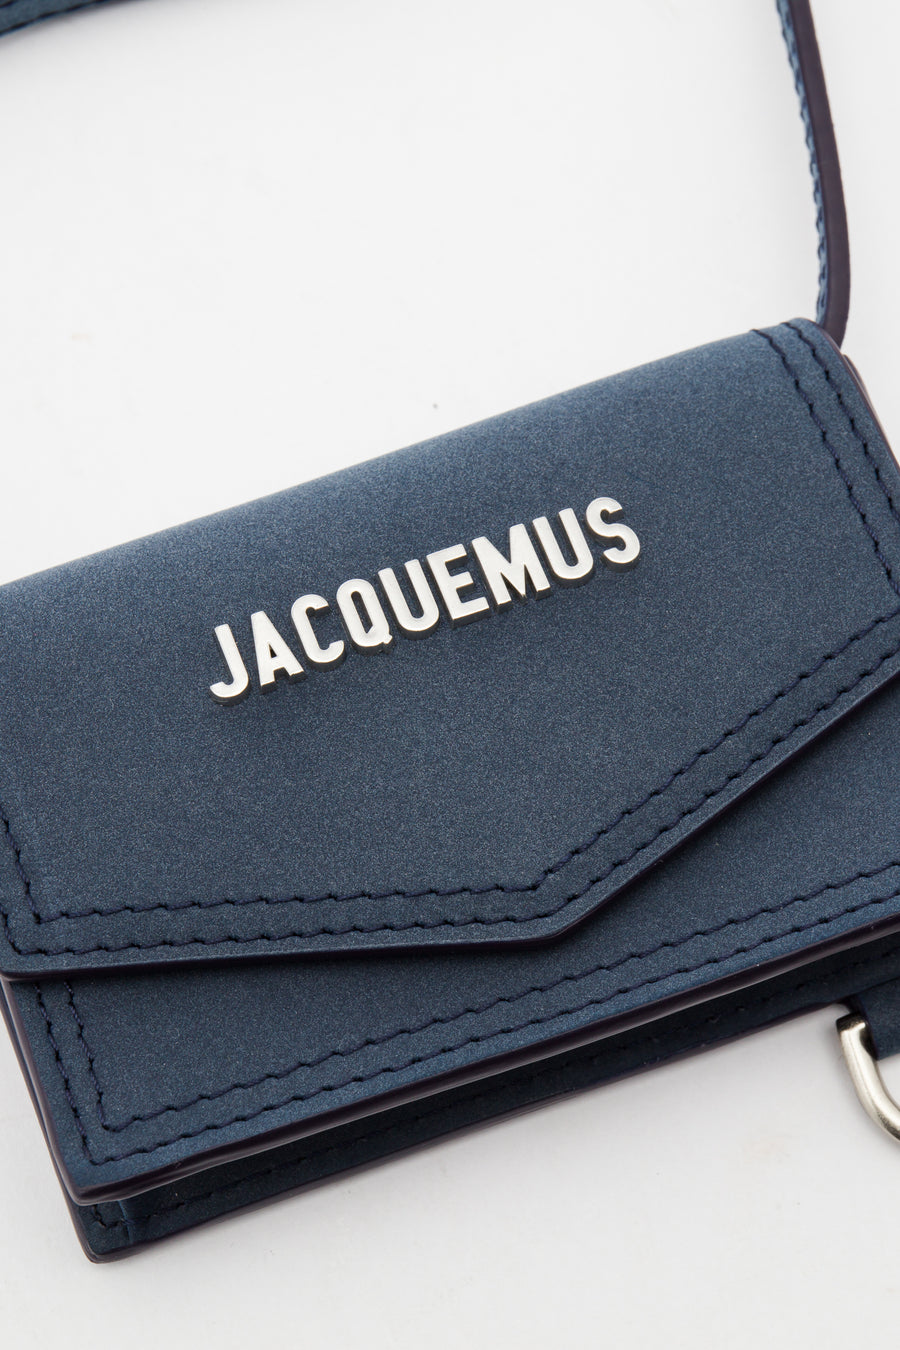 Jacquemus ‘Le Porte Azur’ Strapped Pouch Unisex Navy Blue | Vitkac